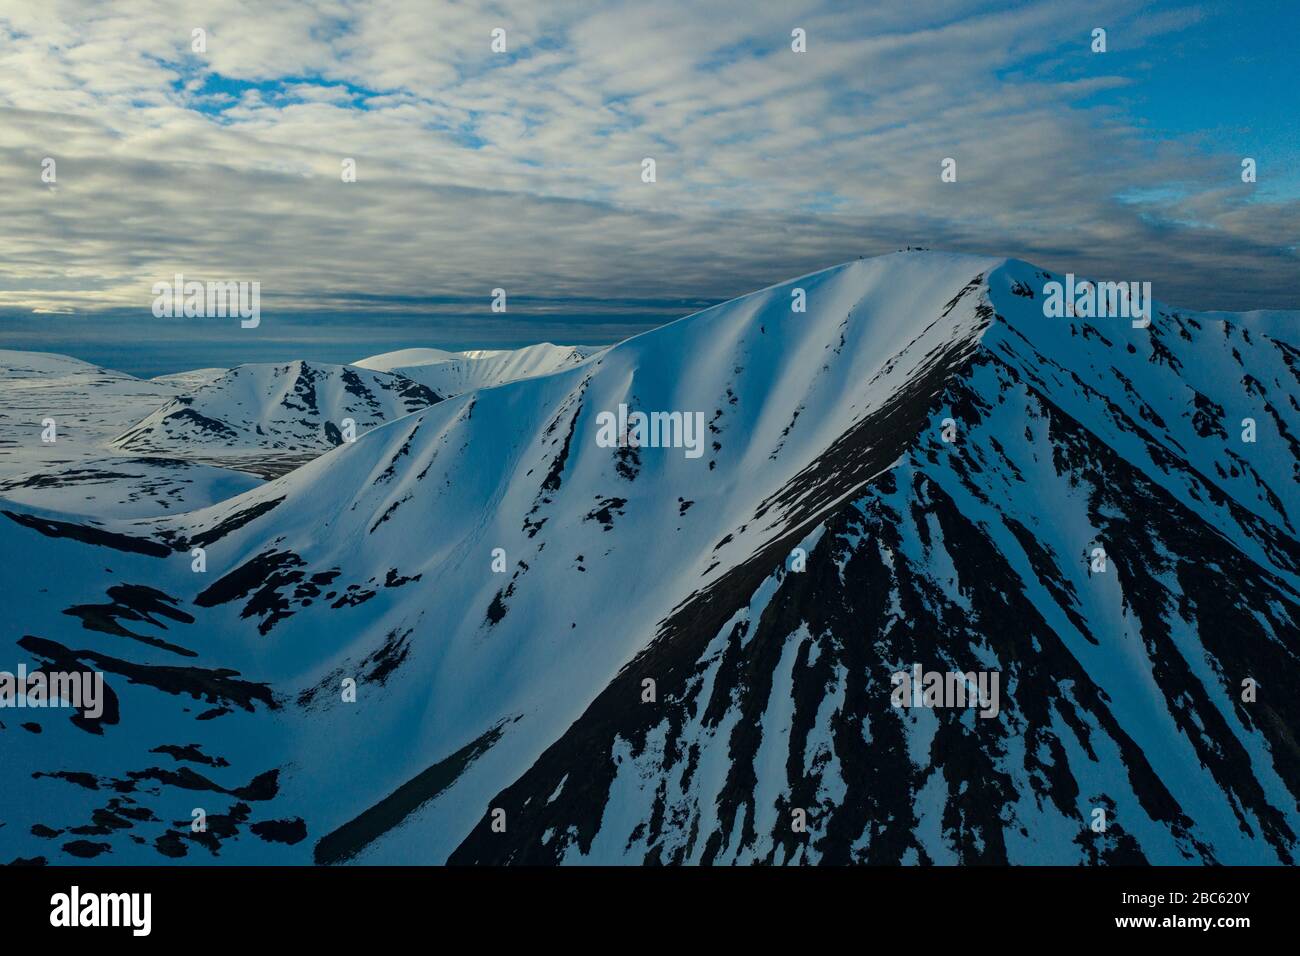 Les pentes des montagnes sont recouvertes de neige par temps nuageux. Lieu de tournage sur la côte nord de la mer de Béring, région de Chukchi, Russie. Banque D'Images